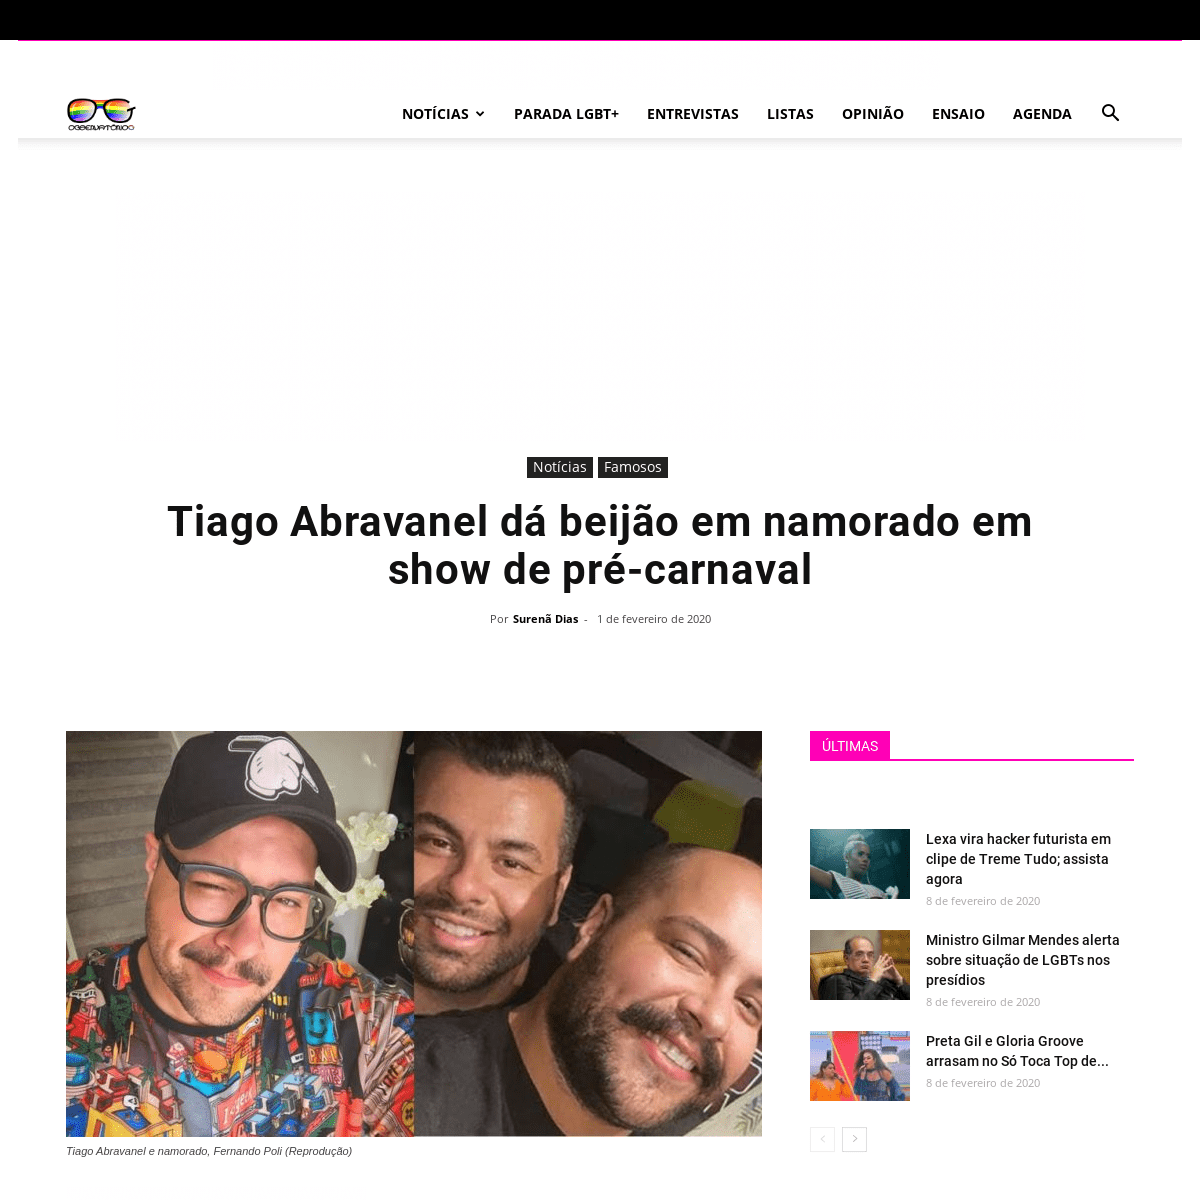 A complete backup of observatoriog.bol.uol.com.br/noticias/2020/02/tiago-abravanel-da-beijao-em-namorado-em-show-de-pre-carnaval